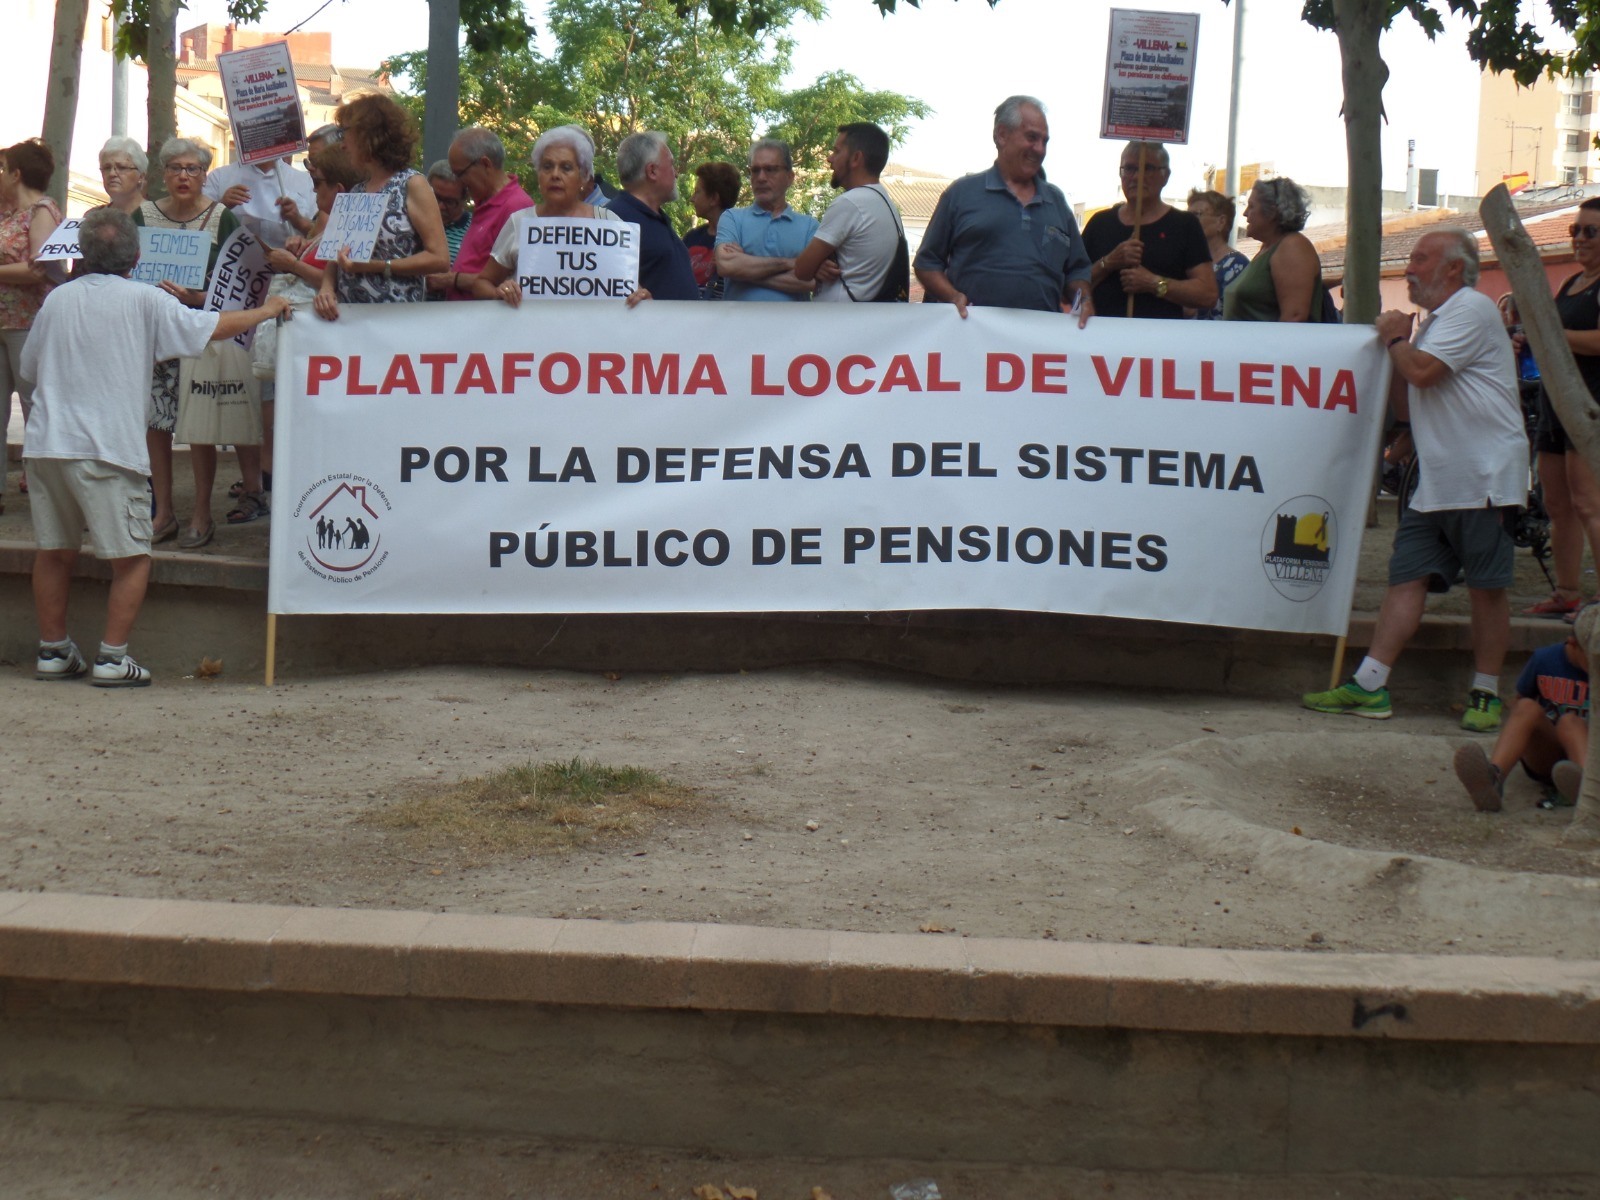 La Plataforma de Pensionistas trasladará sus reivindicaciones al Parlamento Valenciano